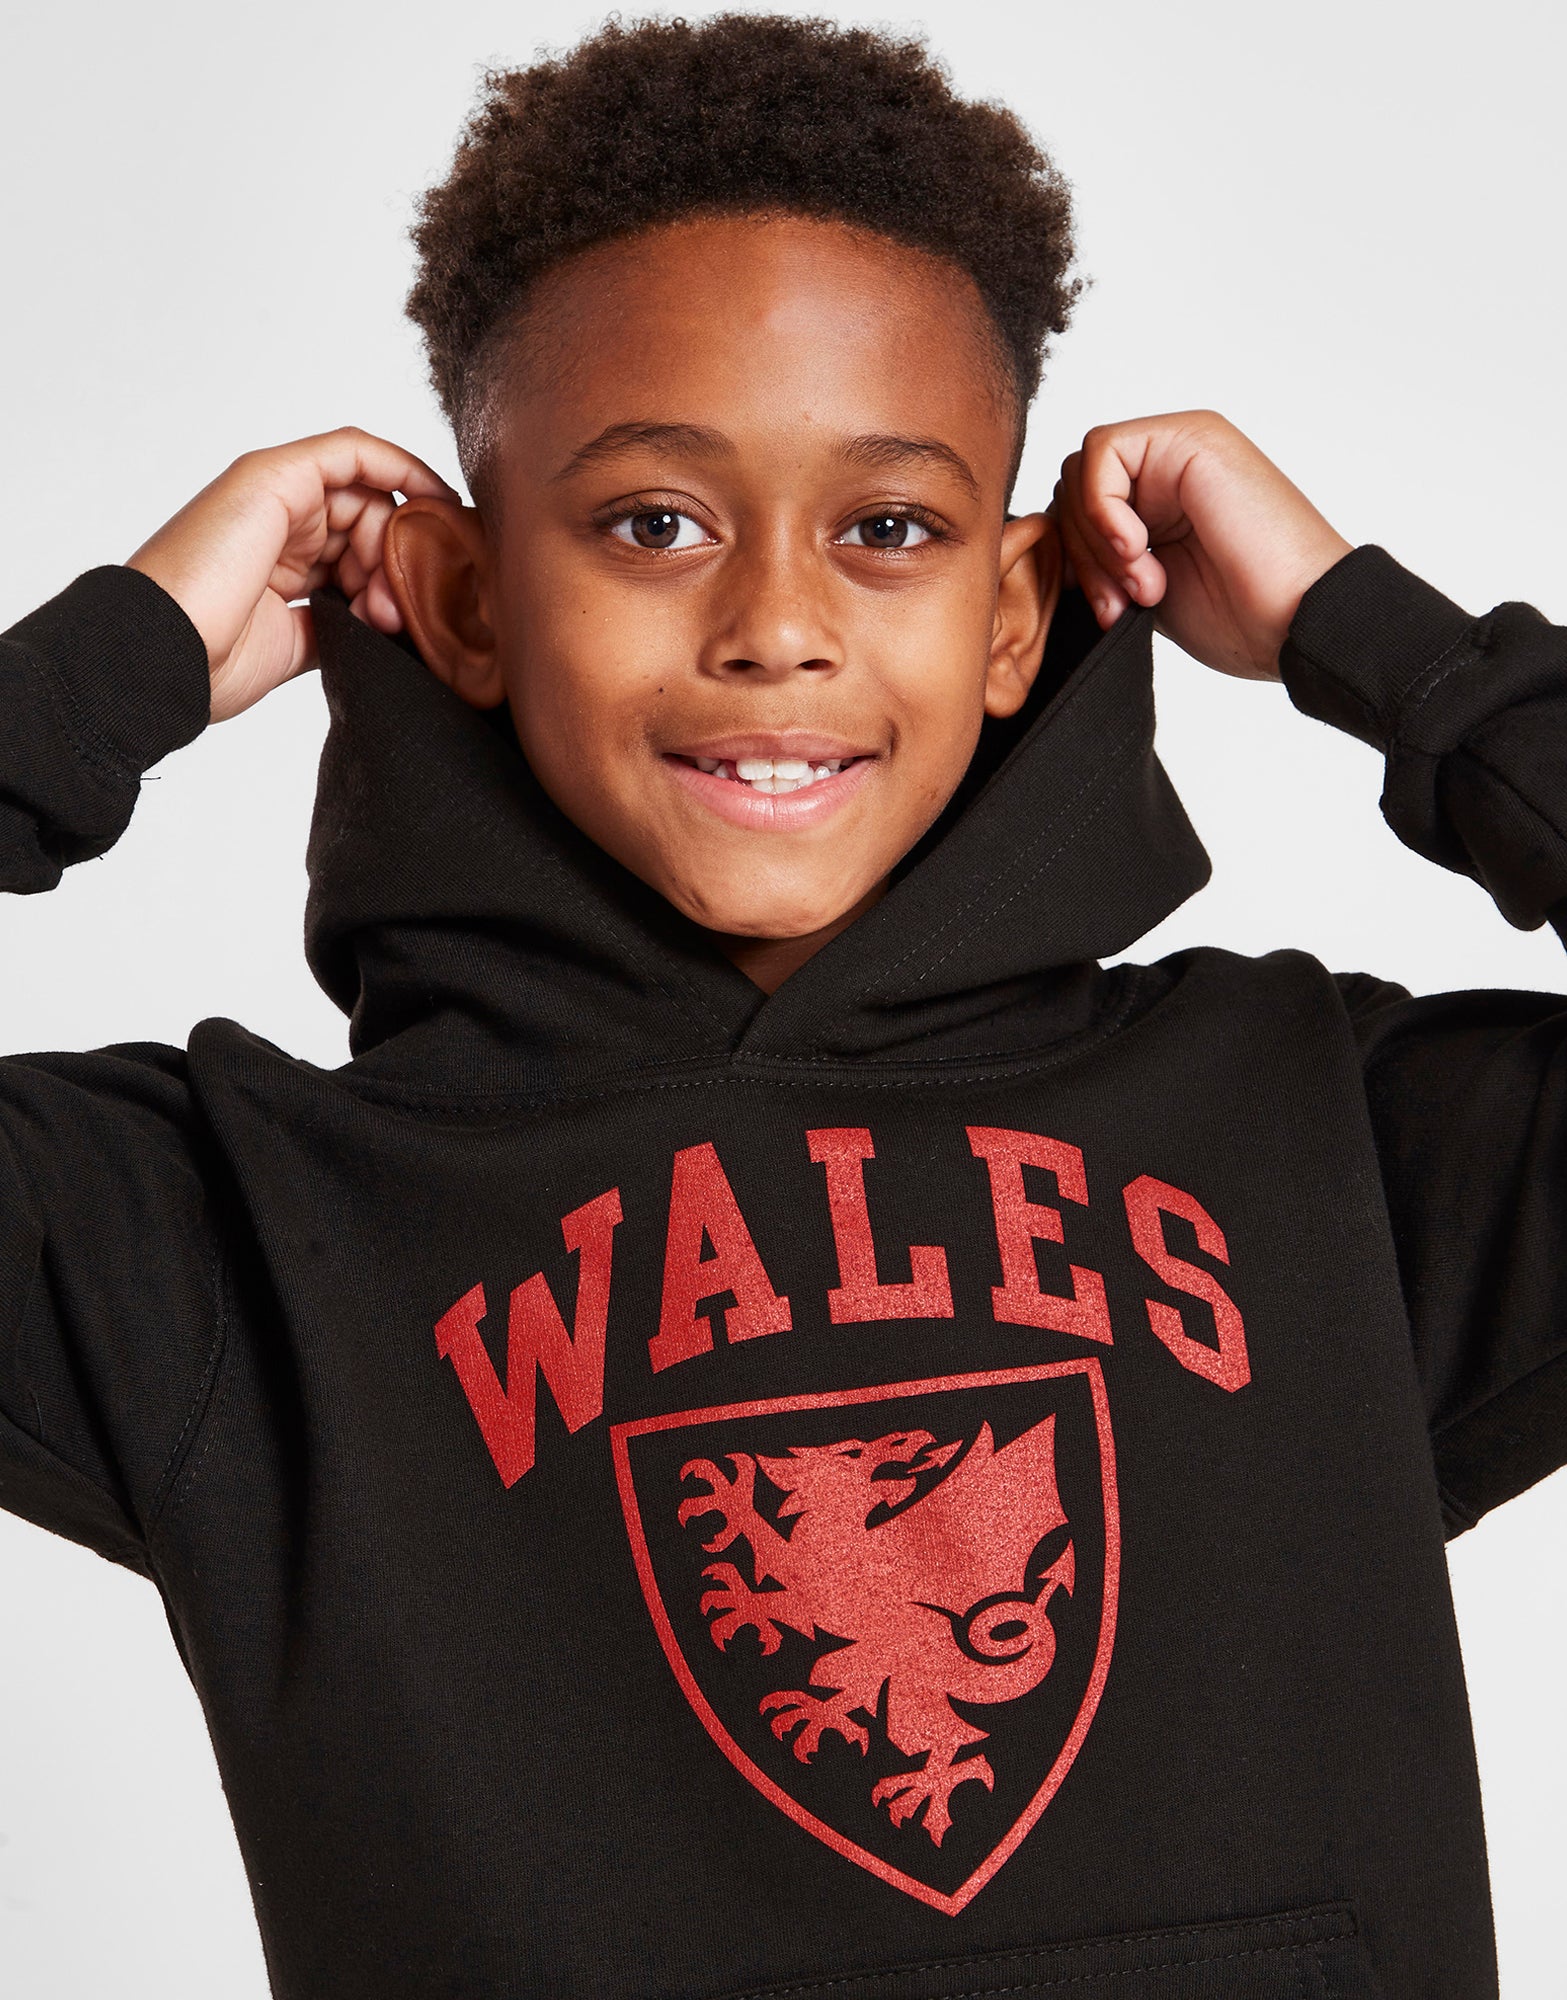 Official Team Wales Kids Hoodie - Black